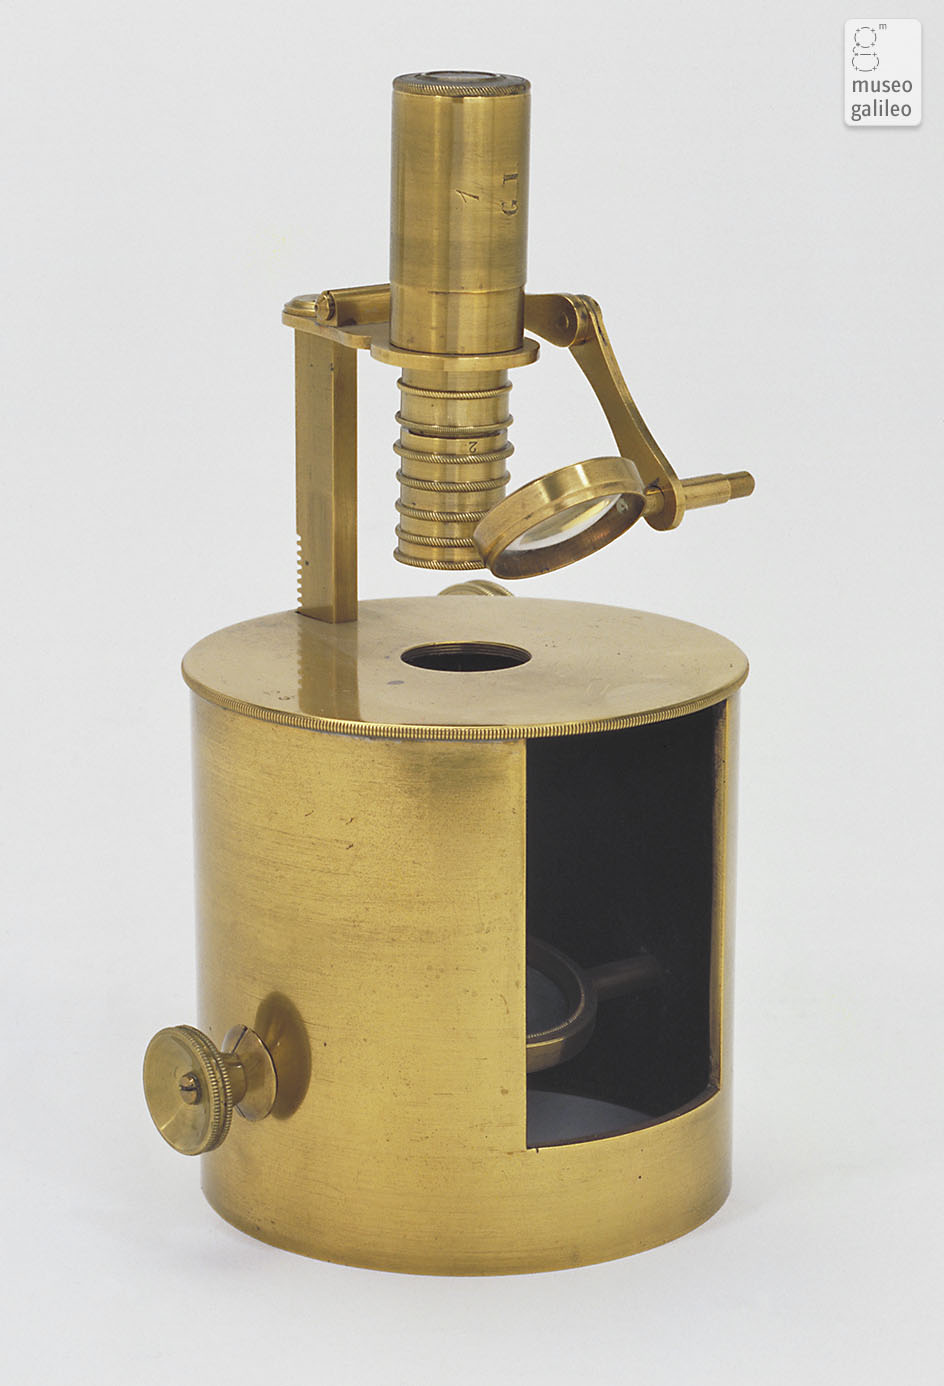 Compound microscope (Inv. 3238)